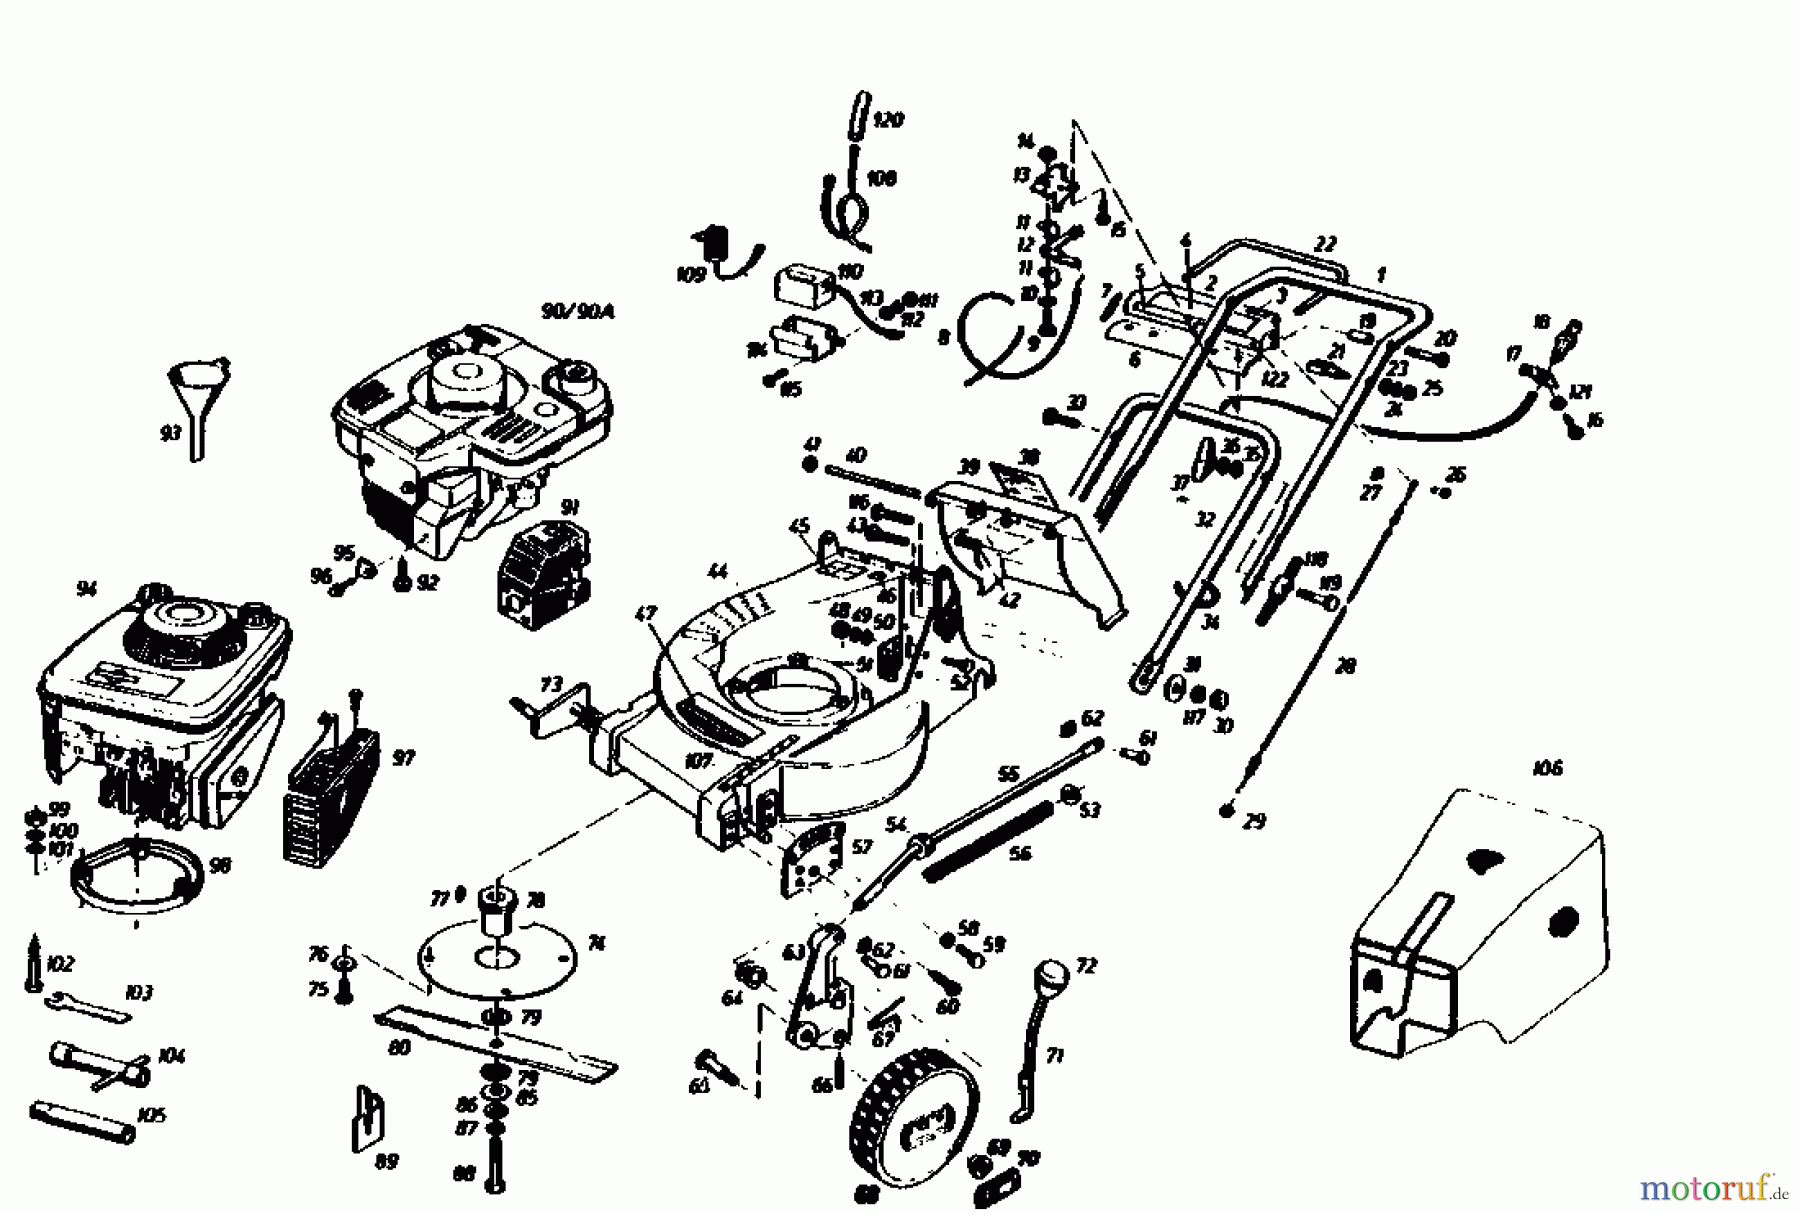  Gutbrod Motormäher mit Antrieb HB 55 R 02882.01  (1986) Grundgerät